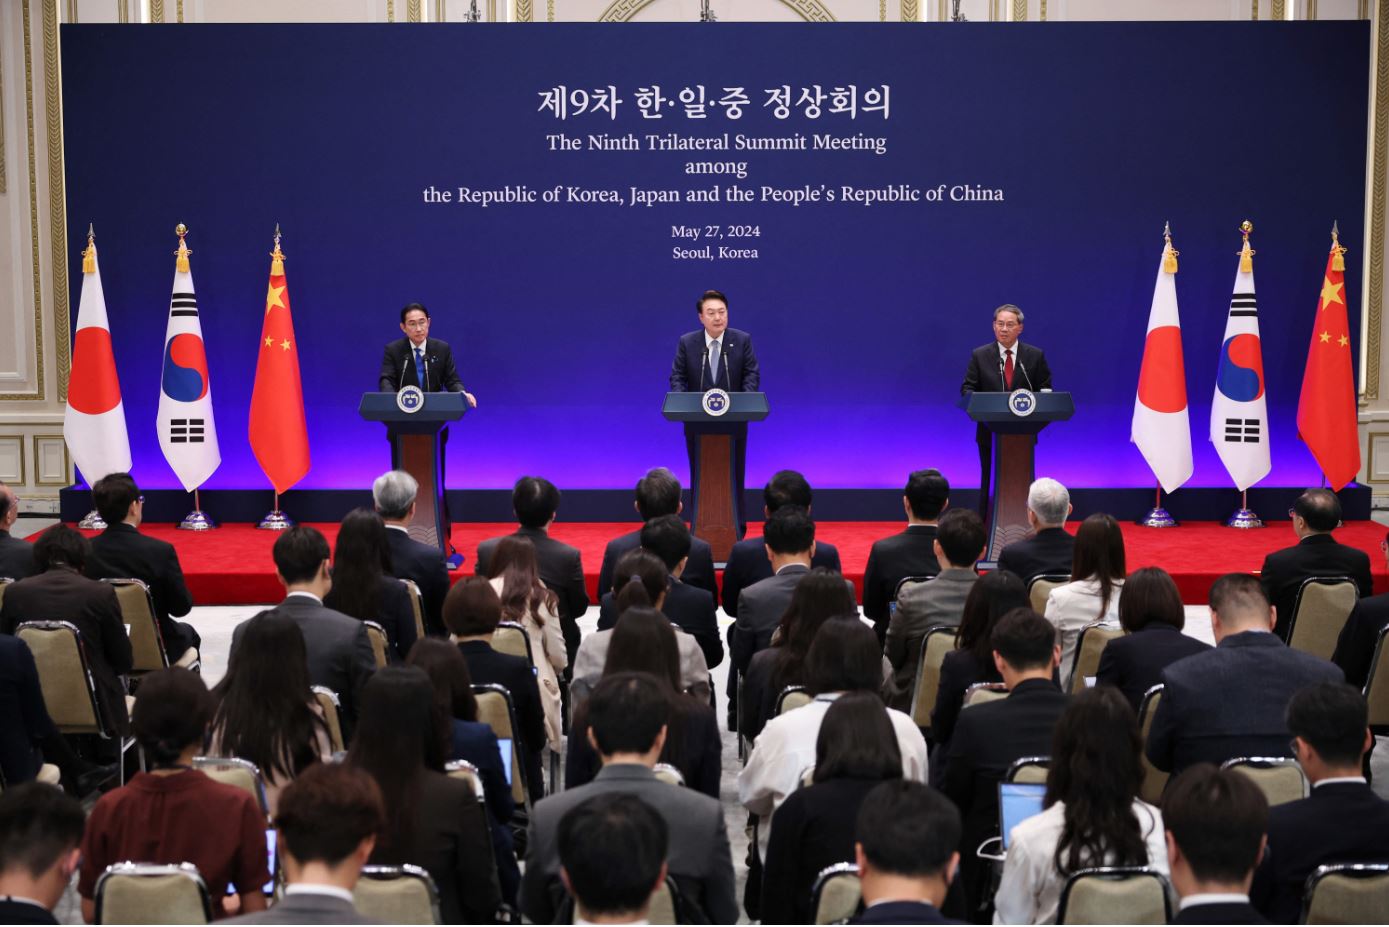 افتتاح أول قمة لزعماء كوريا الجنوبية والصين واليابان منذ خمس سنوات